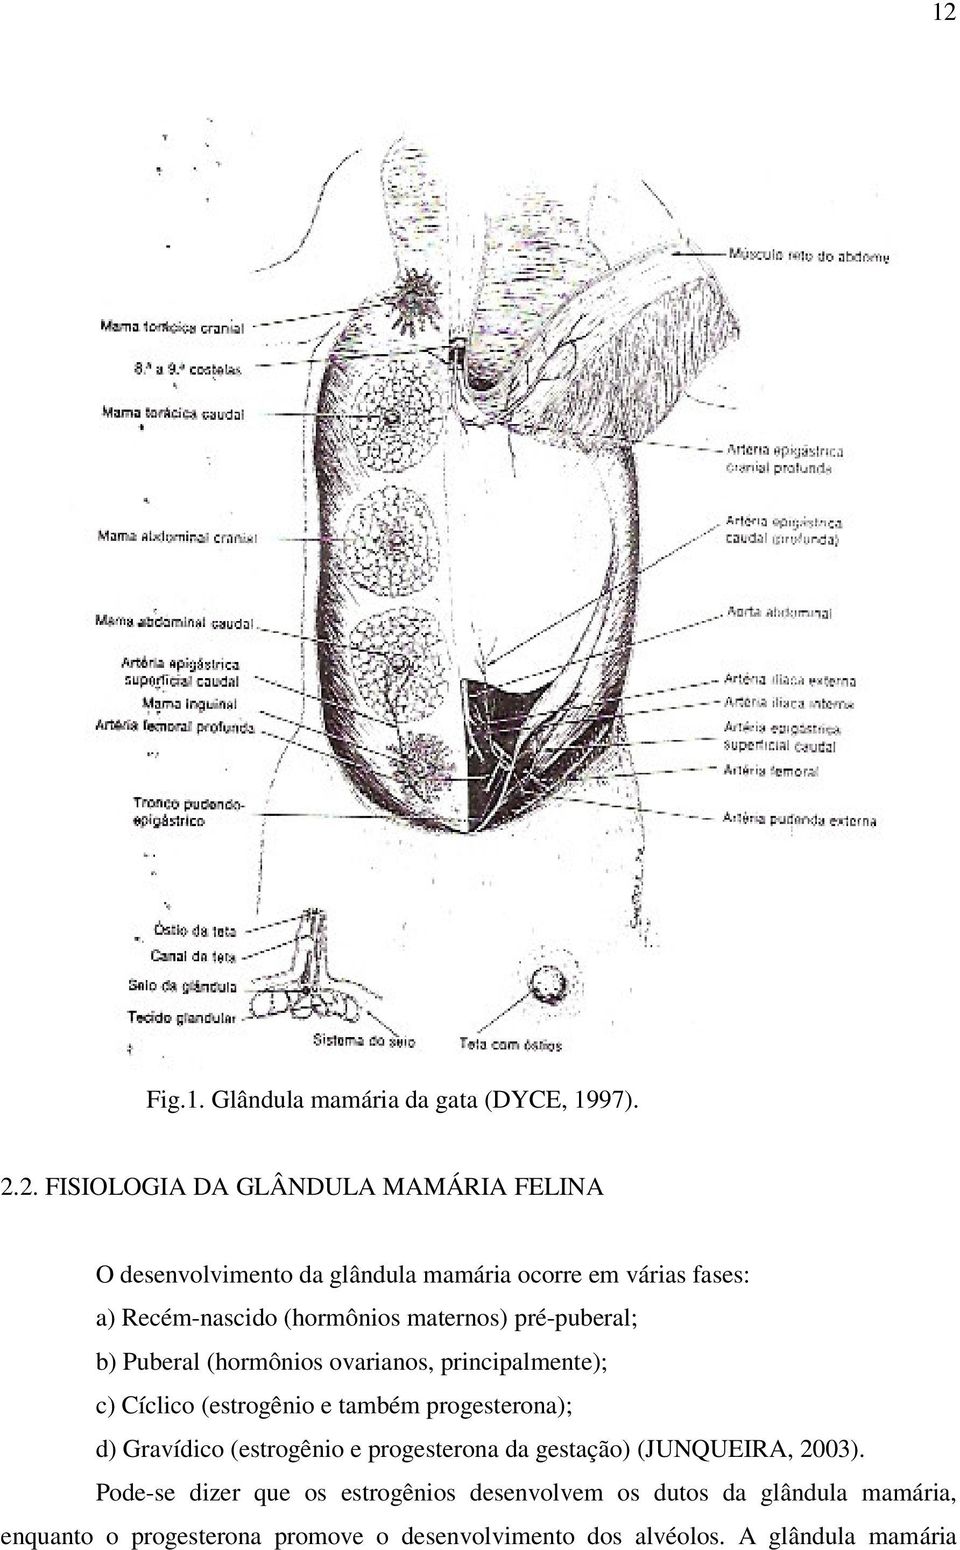 Cíclico (estrogênio e também progesterona); d) Gravídico (estrogênio e progesterona da gestação) (JUNQUEIRA, 2003).